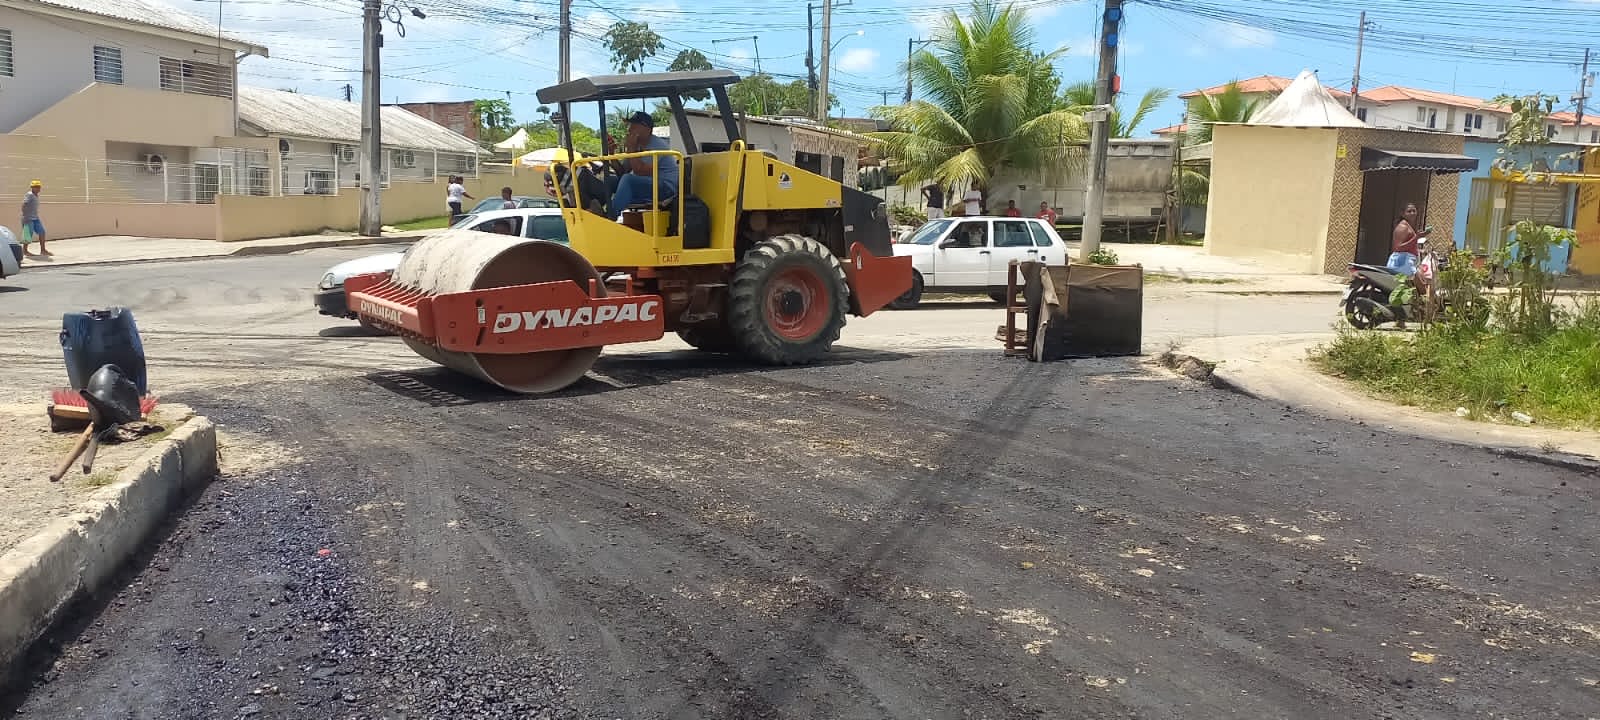 Simões Filho: Após cobranças da Prefeitura empresa Vertical realiza reparos no asfalto do Residencial Ipitanga